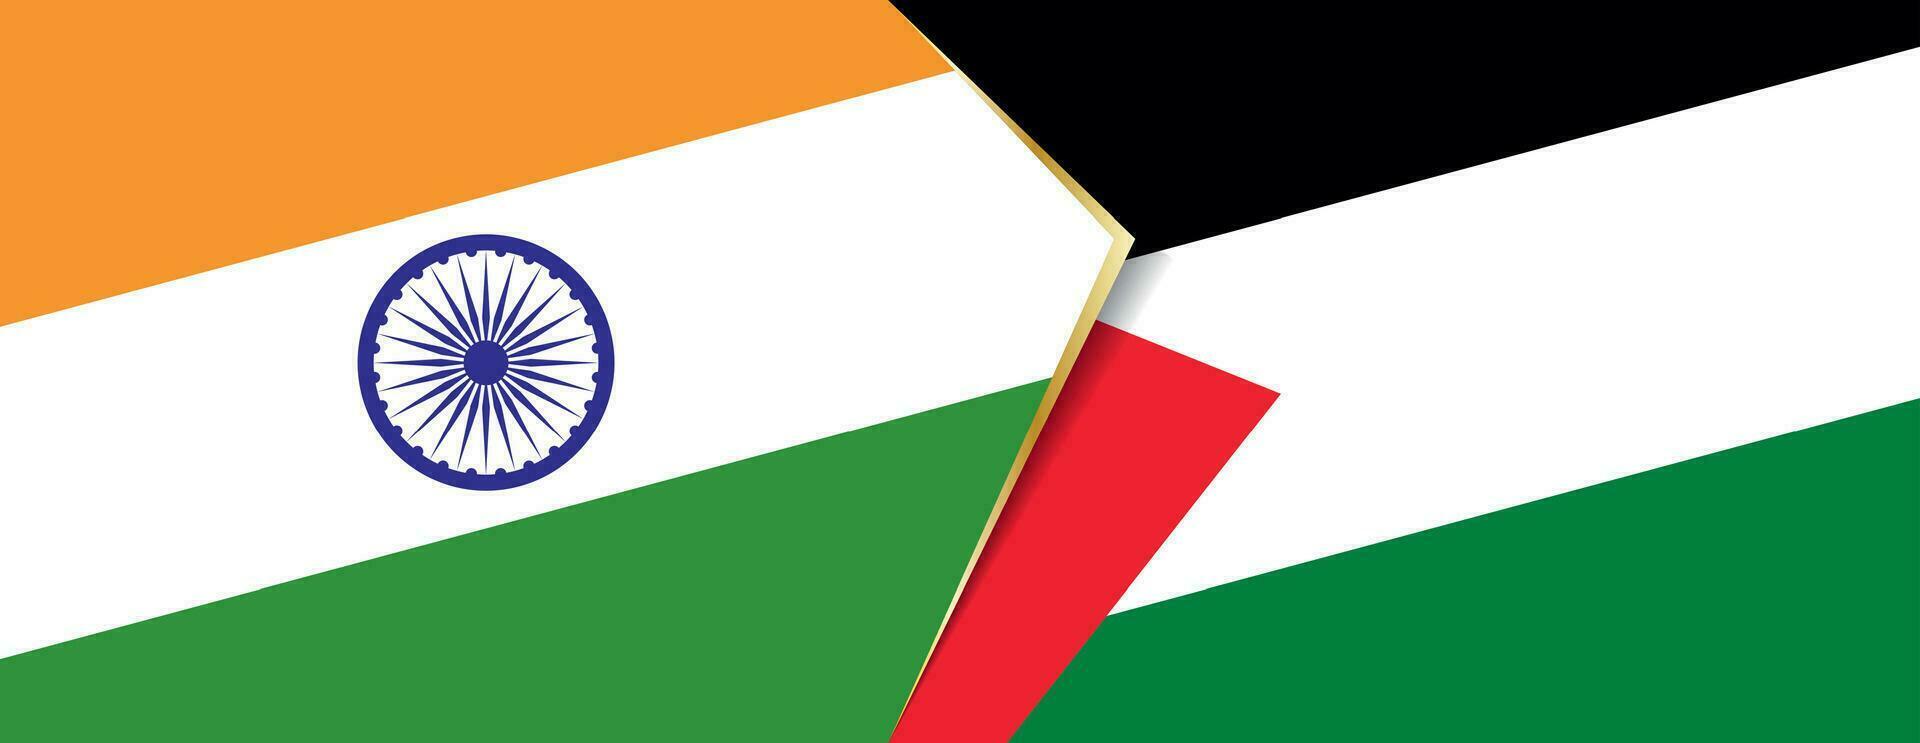 Índia e Palestina bandeiras, dois vetor bandeiras.